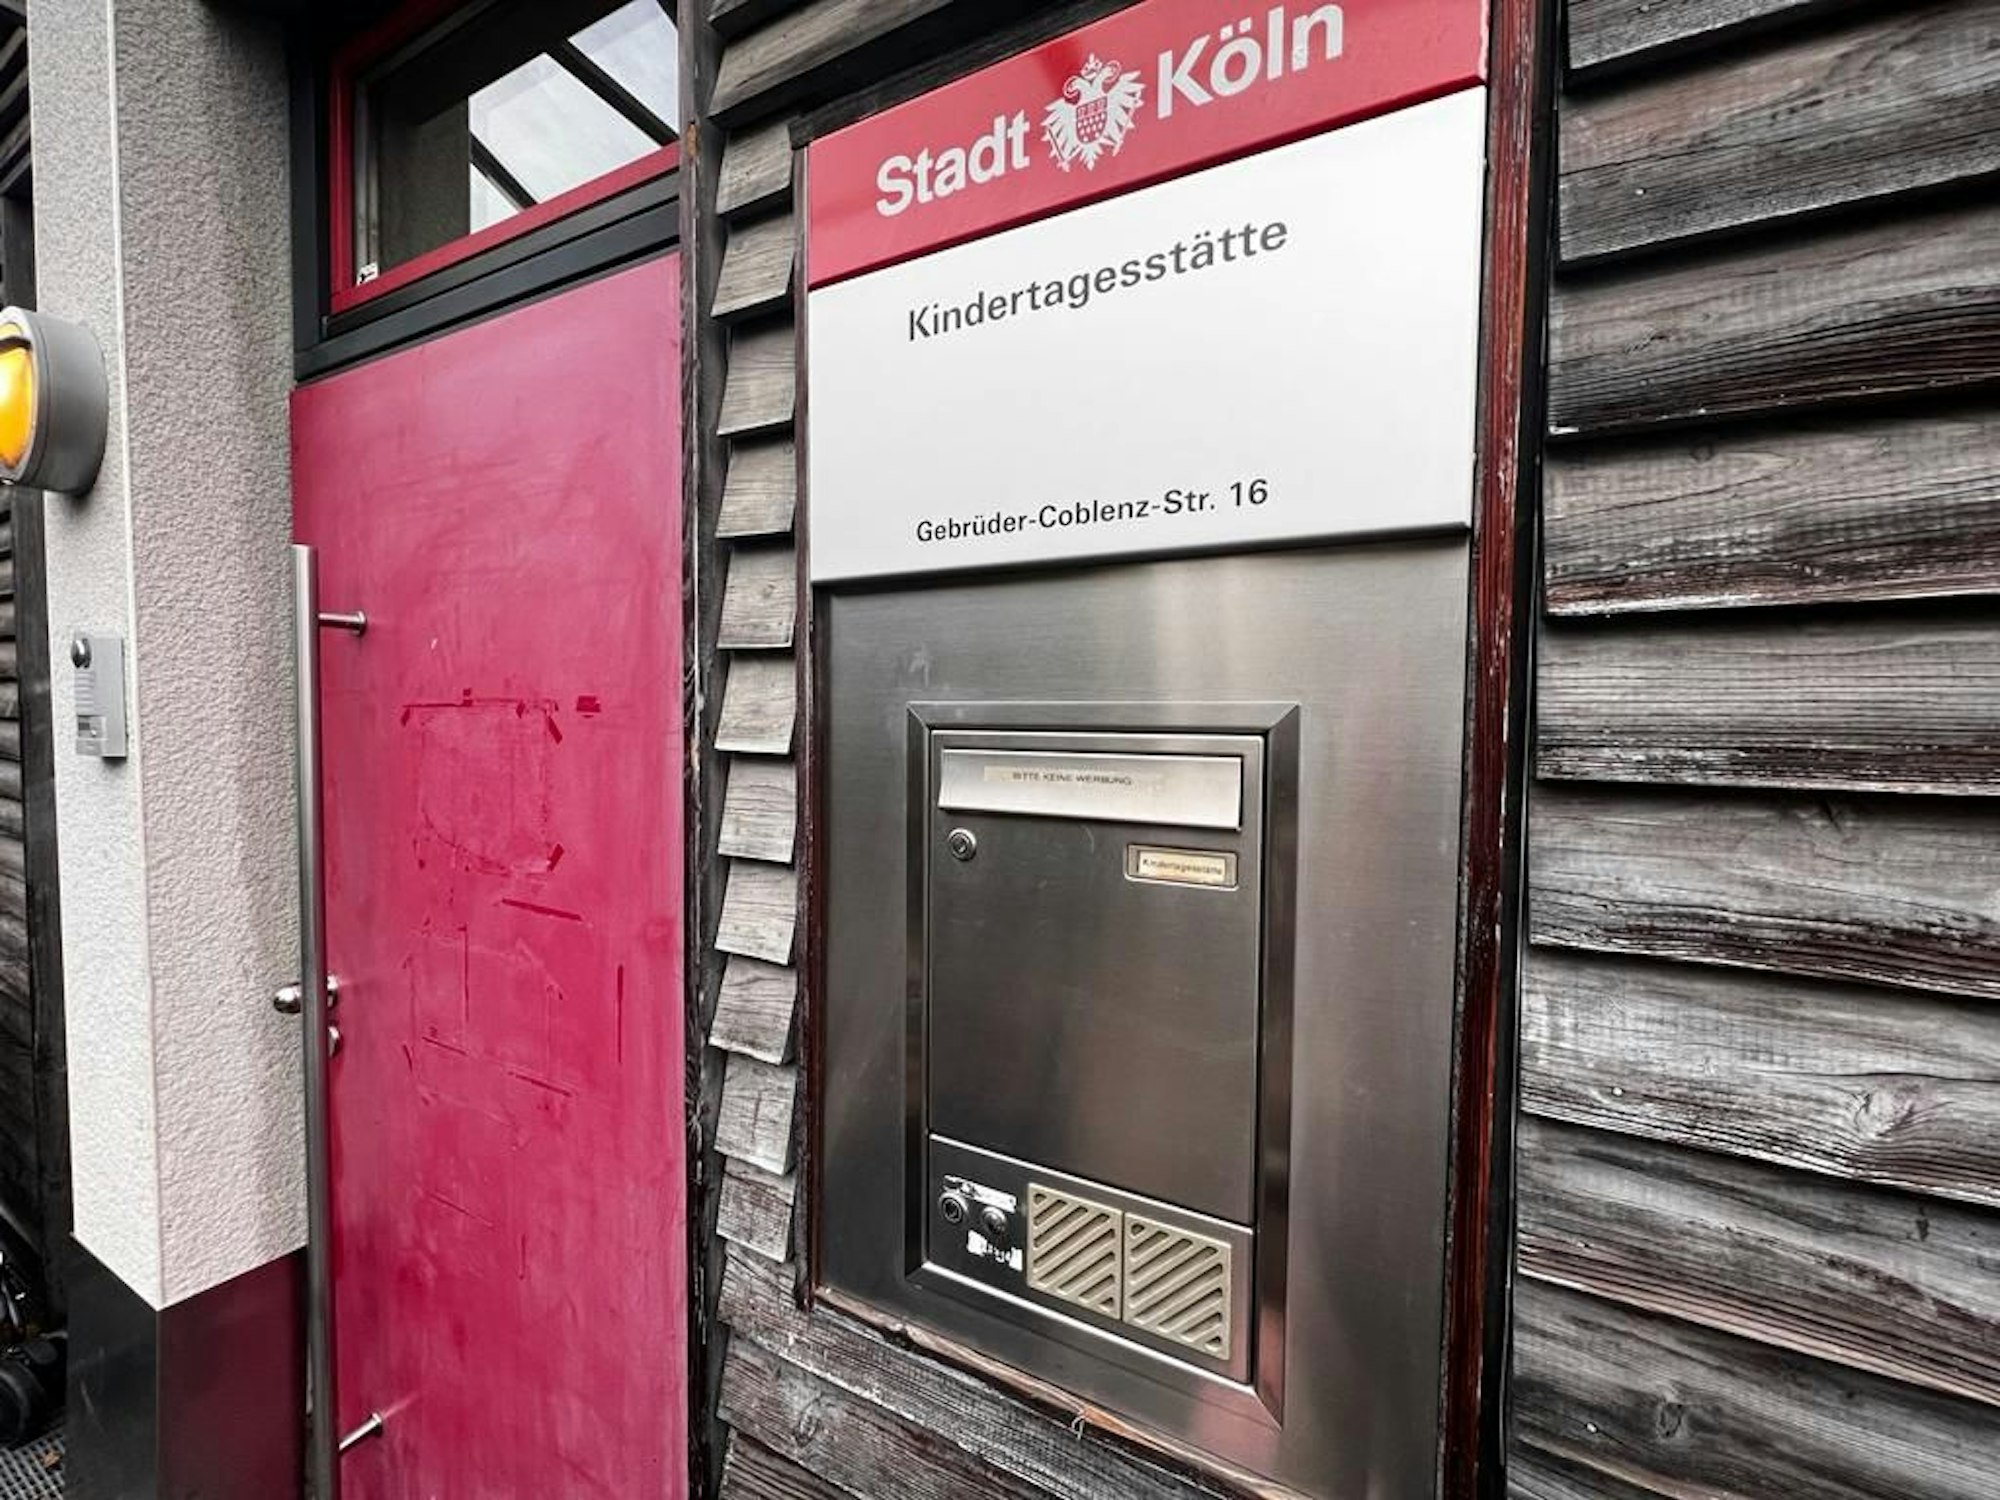 Neben einer Haustür hängt ein Schild, das auf eine Kindertagesstätte der Stadt Köln verweist.